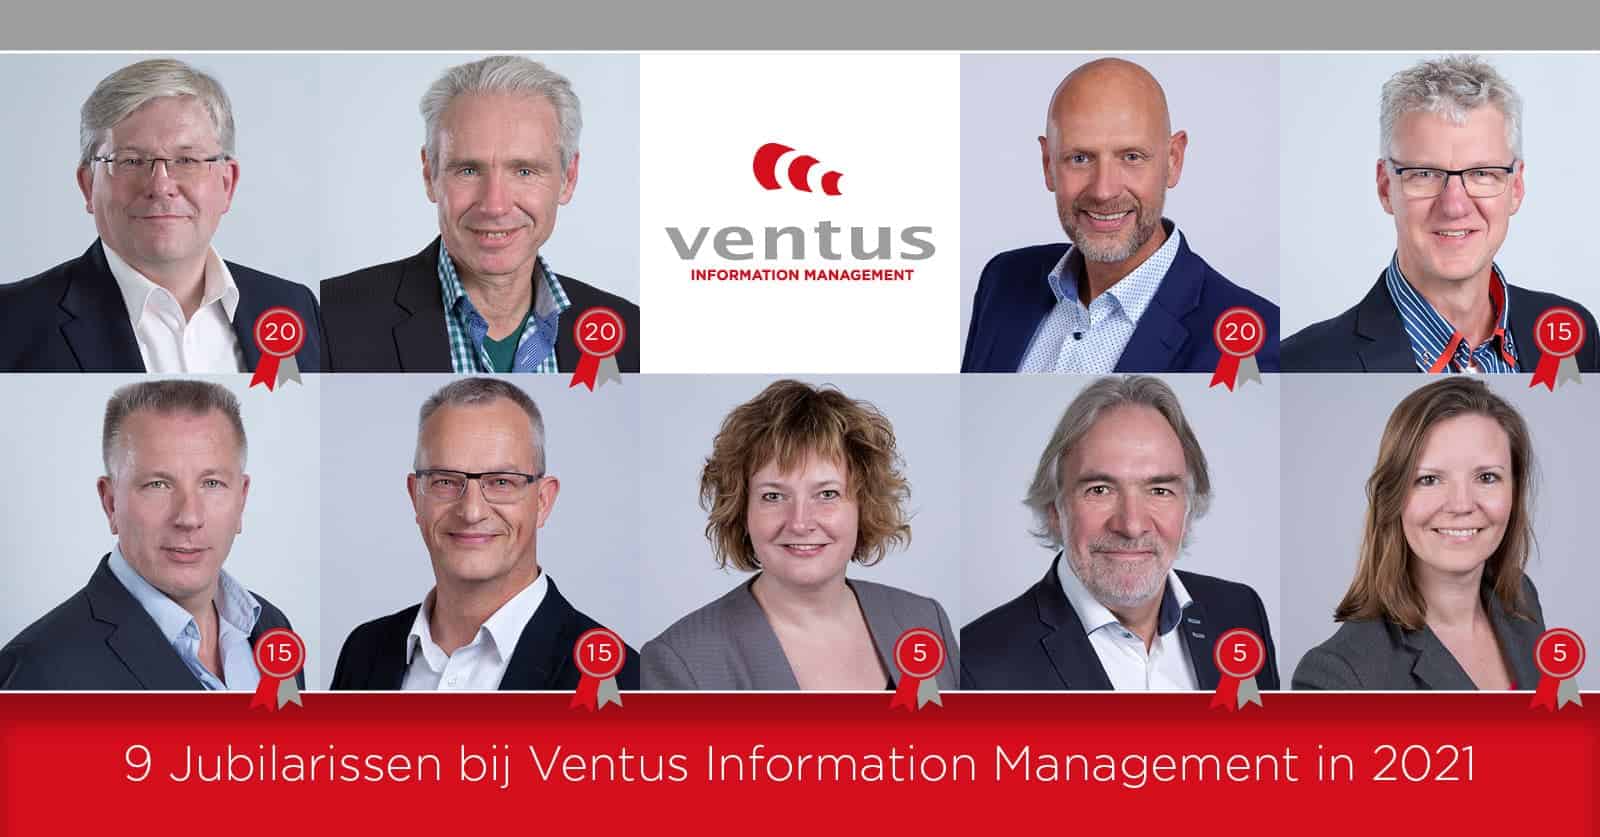 Negen jubilarissen bij Ventus Information Management in 2021